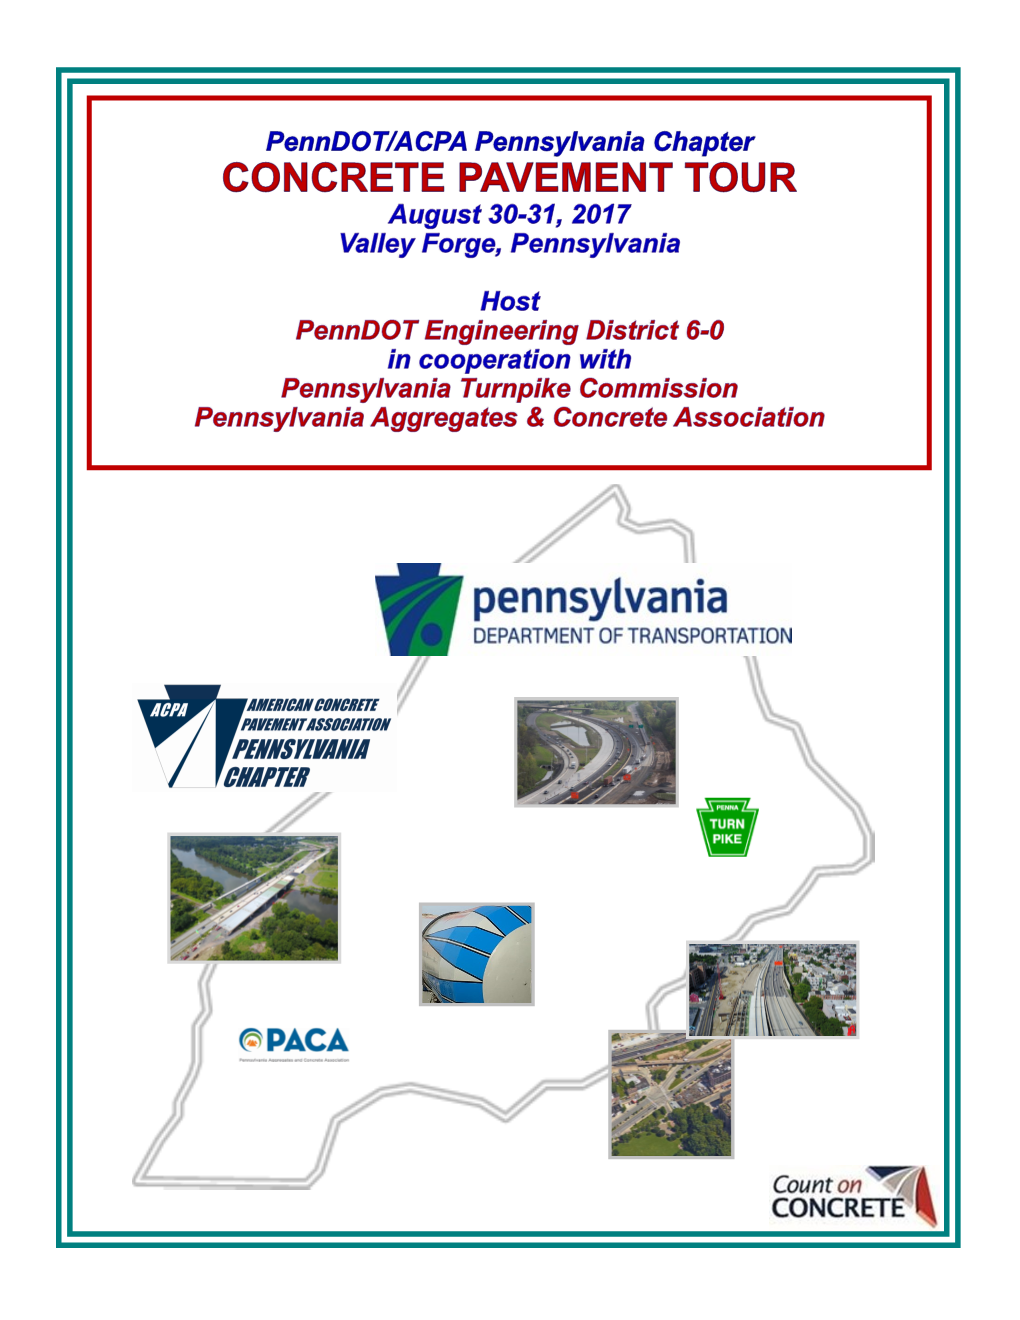 Concrete Pavement Tour/Meeting Participants Penndot / ACPA Pennsylvania Chapter